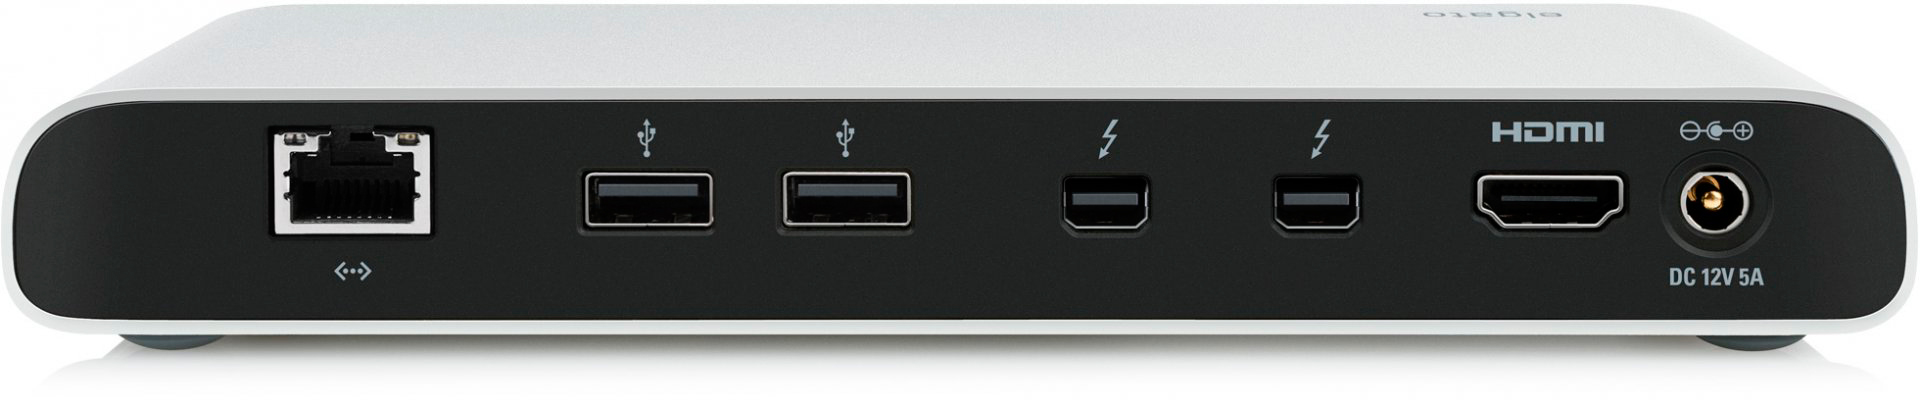 ↪ Elgato uuendas oma Thunderbolti dokki, millel on nüüd 4K toega HDMI-väljund